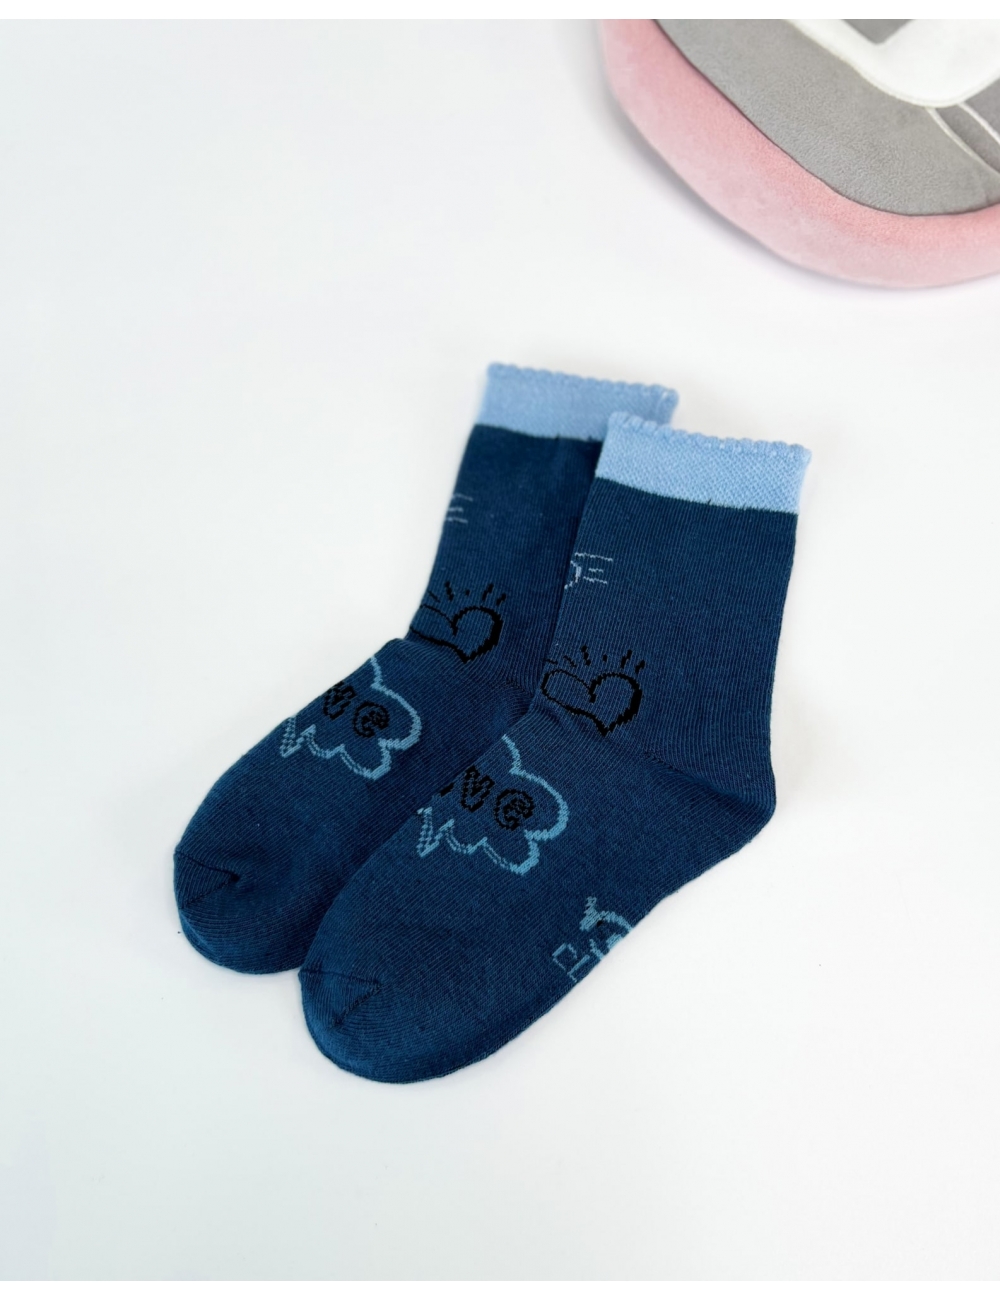 Шкарпетки для дівчинки тм "Yo" Хмарка сині